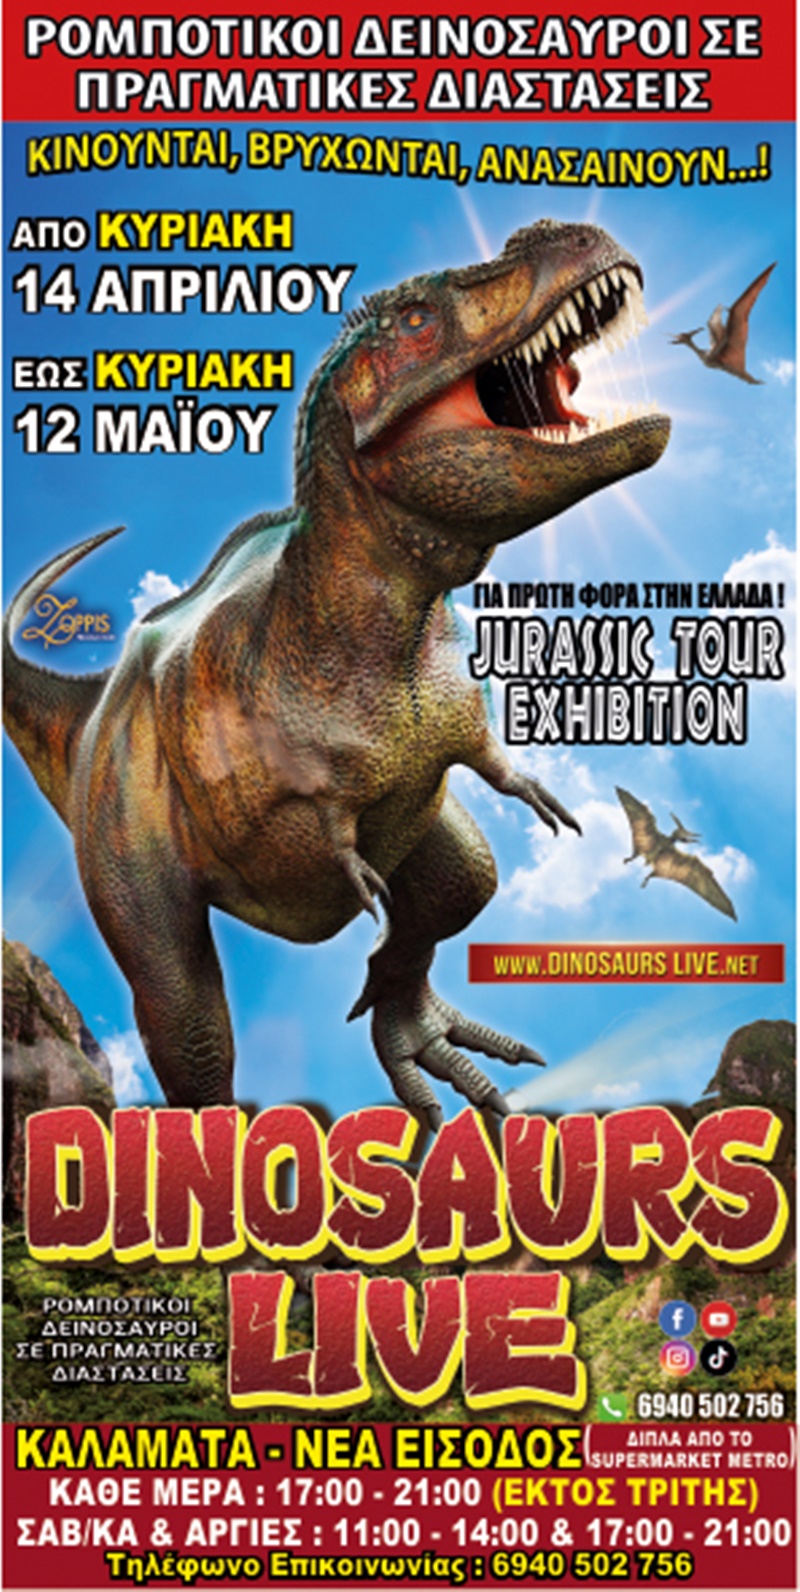 70 ρομποτικοί δεινόσαυροι σε πραγματικές διαστάσεις στην Καλαμάτα 16